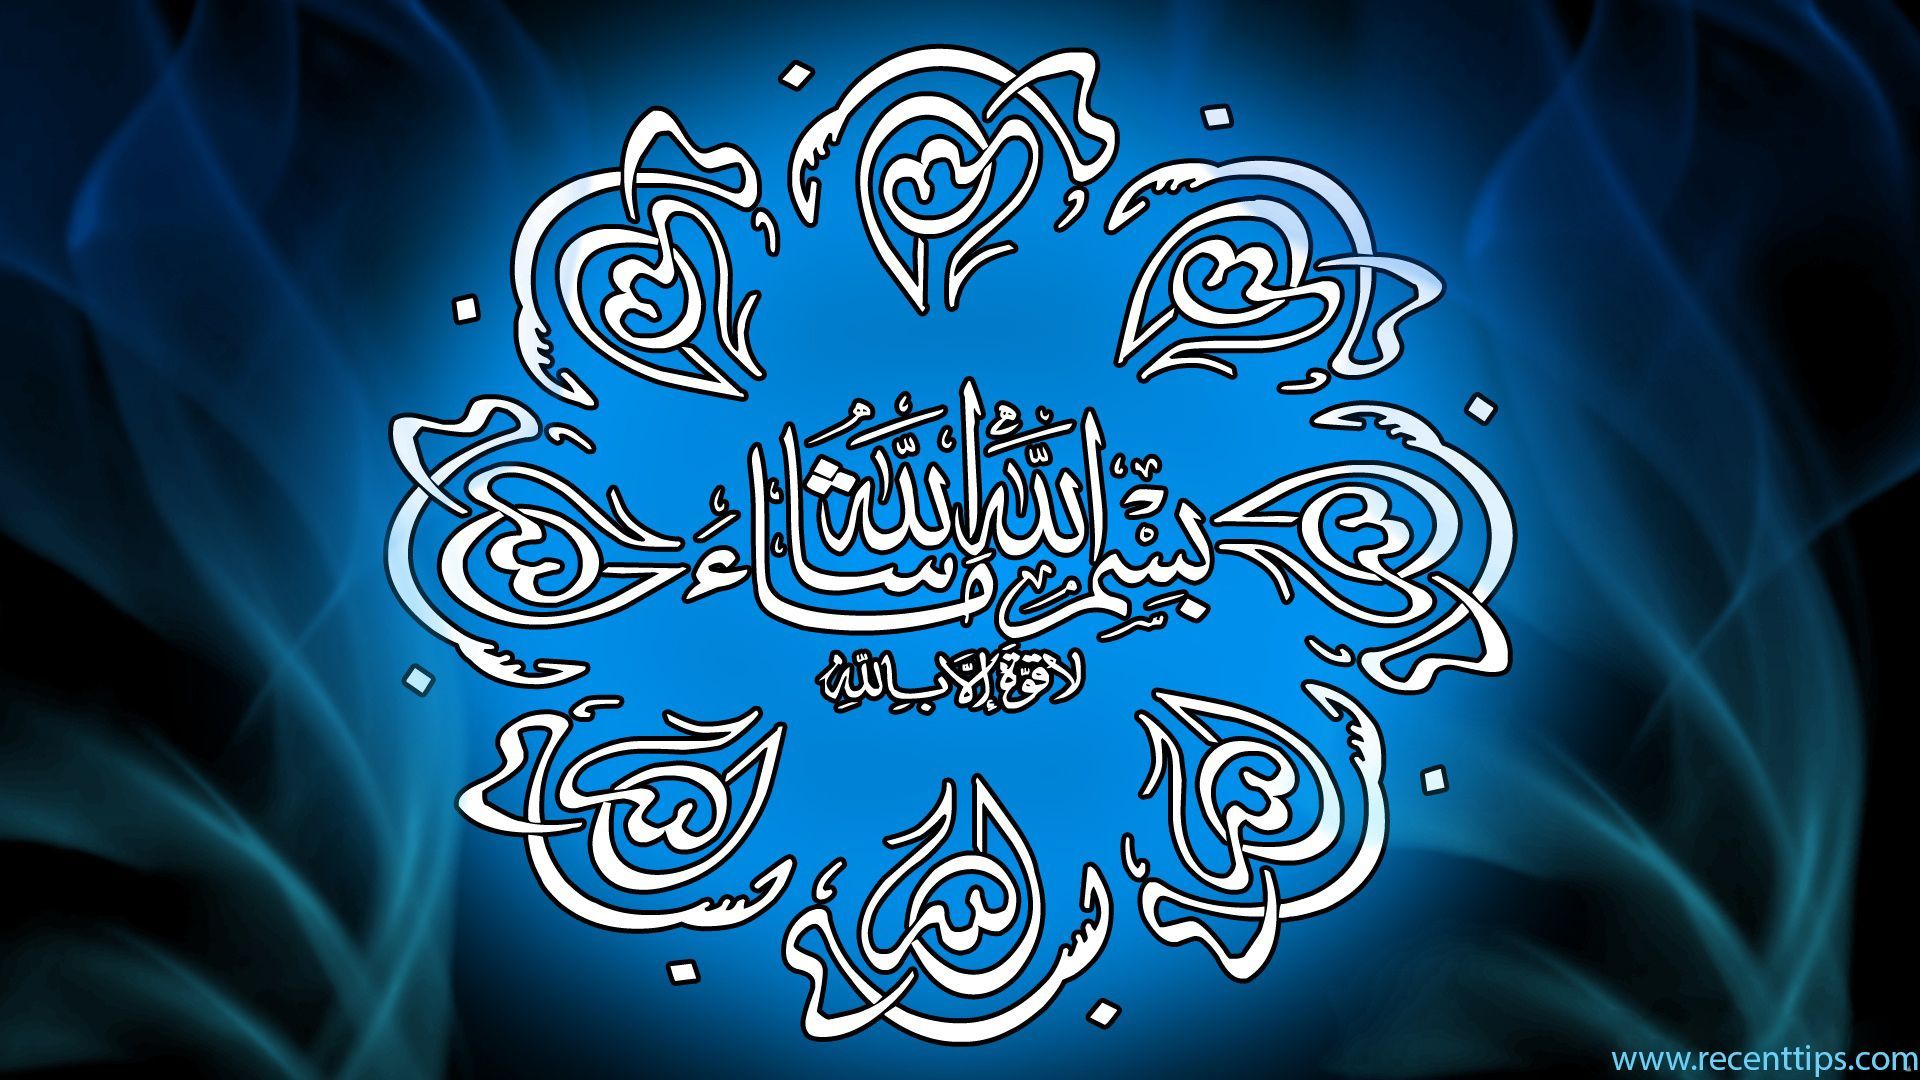 3D Islamic HD Wallpaper. Islamic wallpaper, Islamic wallpaper hd, Free animated wallpaper